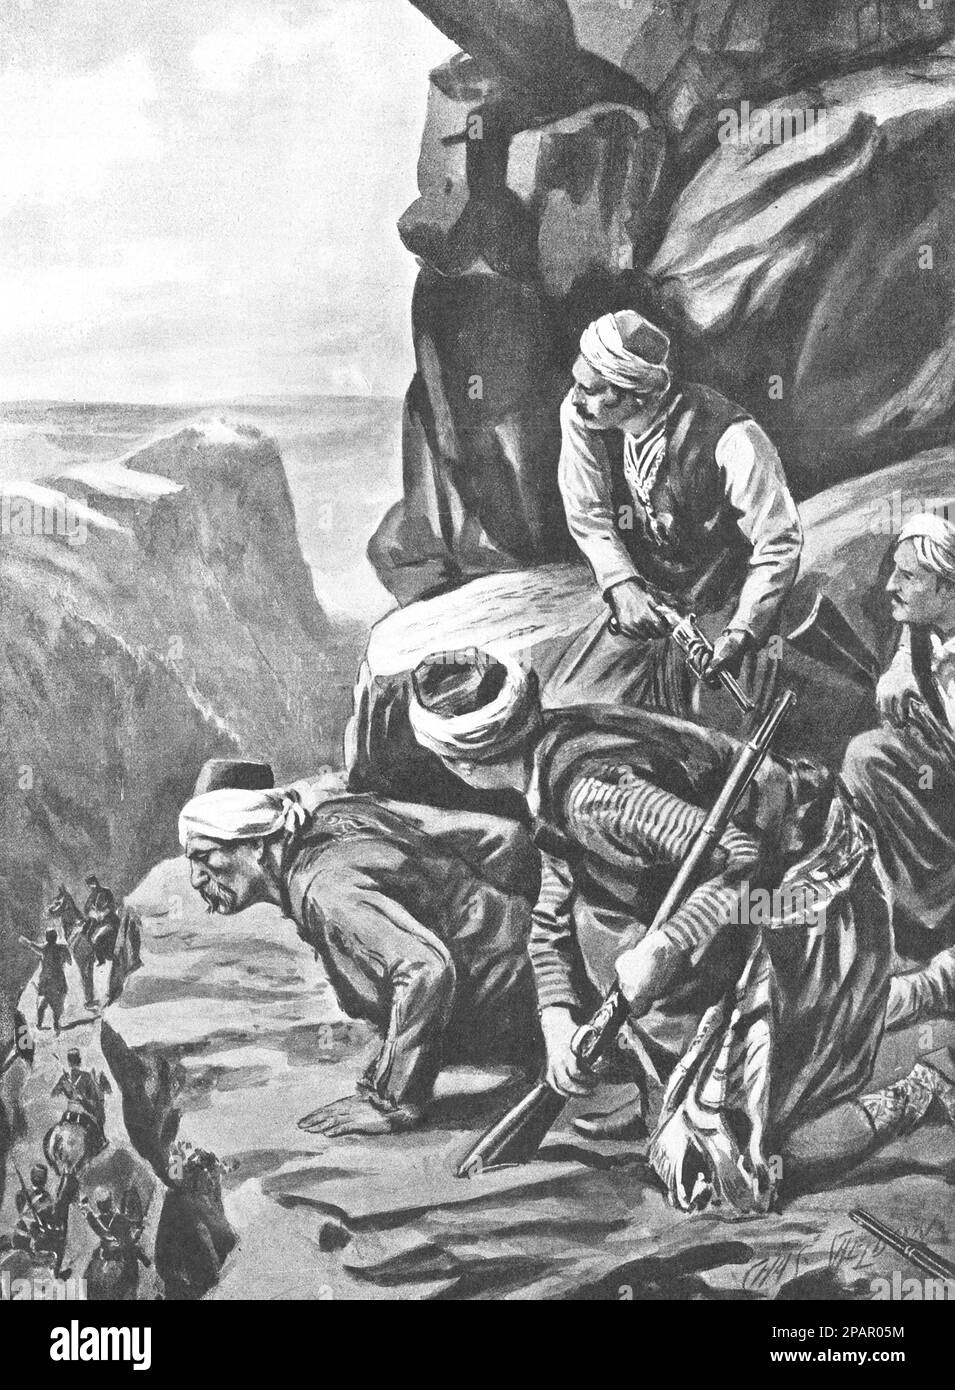 Arnaut rebels in ambush. Revolt in Albania in 1910. Drawing by C. Sheldon, 1910. Stock Photo